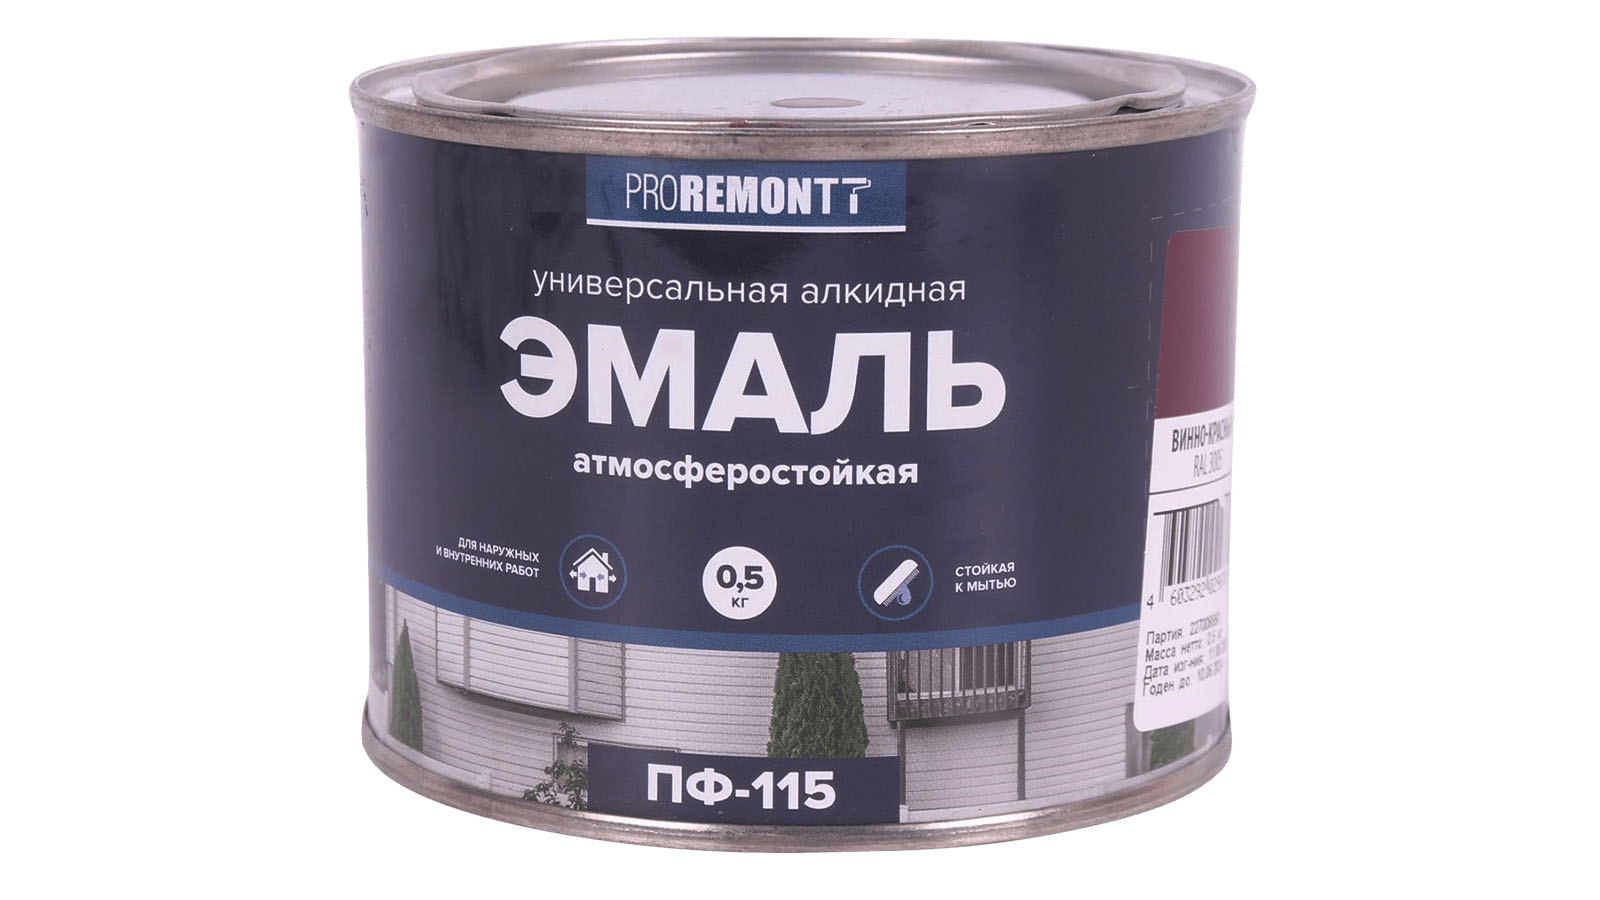 Эмаль PROREMONTT ПФ-115 винно-красный 0.5кг фотография №1